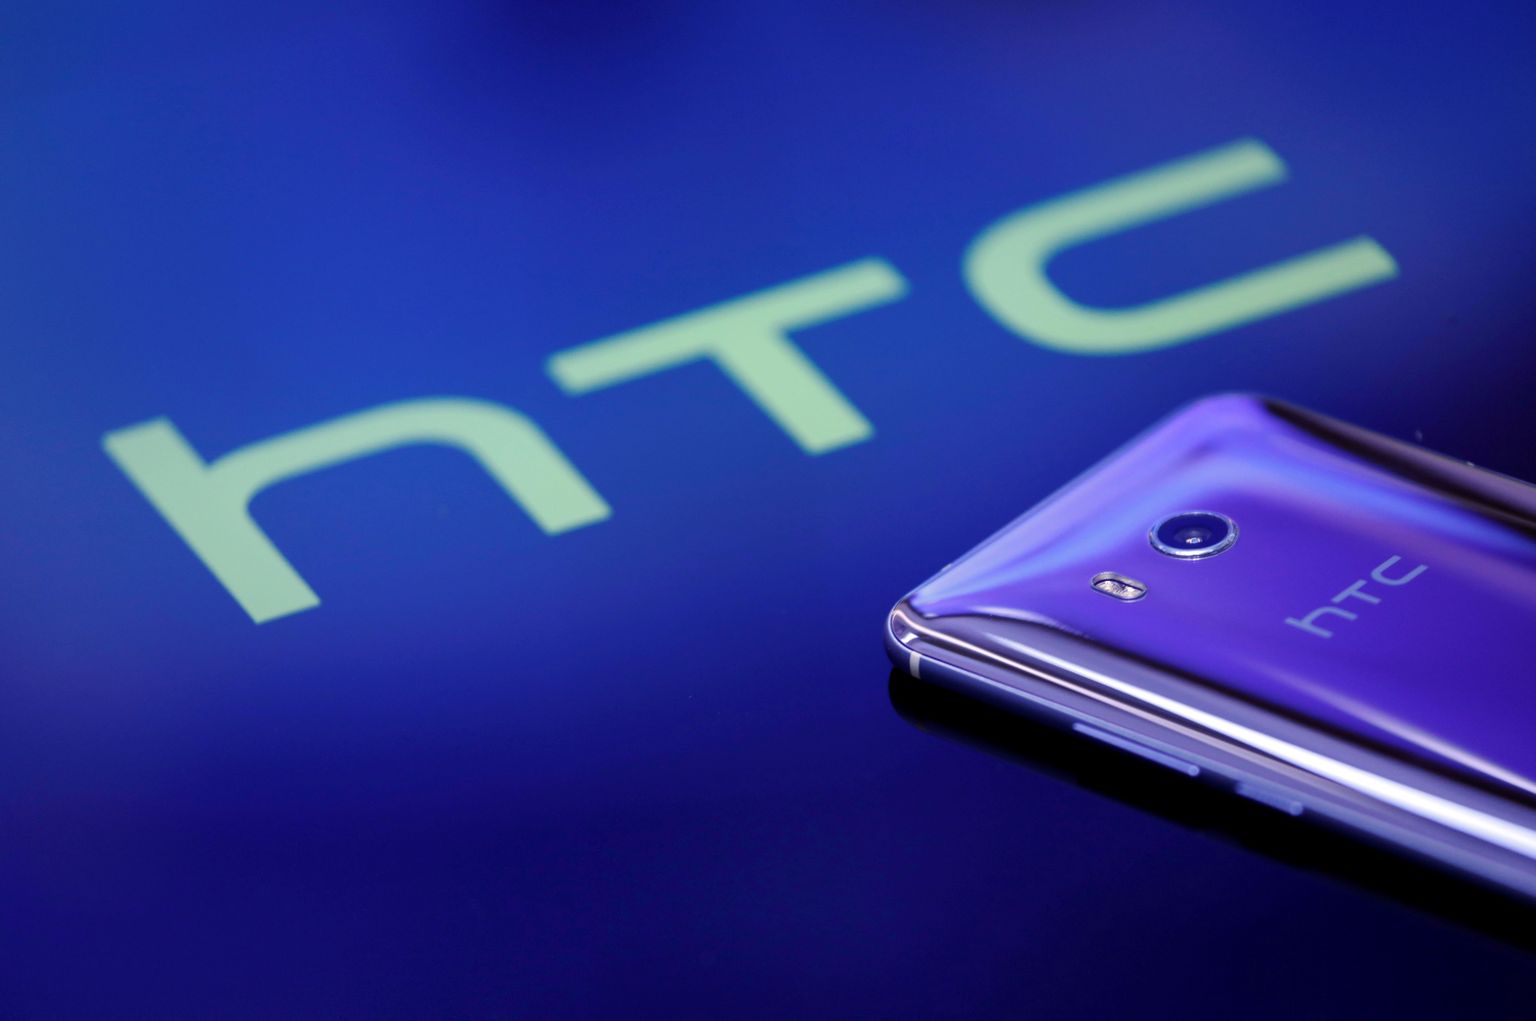 HTC mobiiltelefon